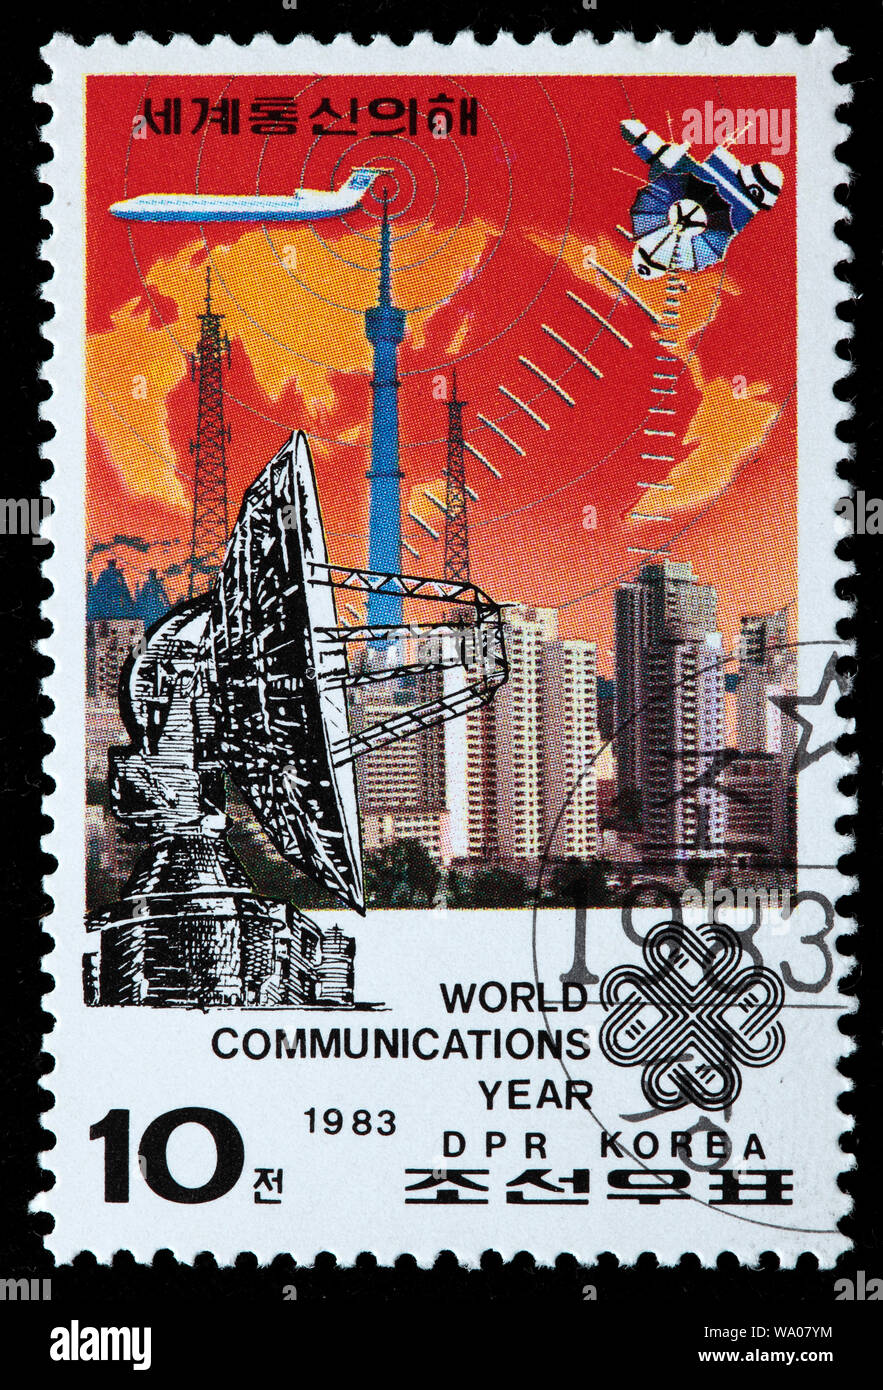 Comunicazioni mondiali anno, francobollo, Corea del Nord, 1983 Foto Stock